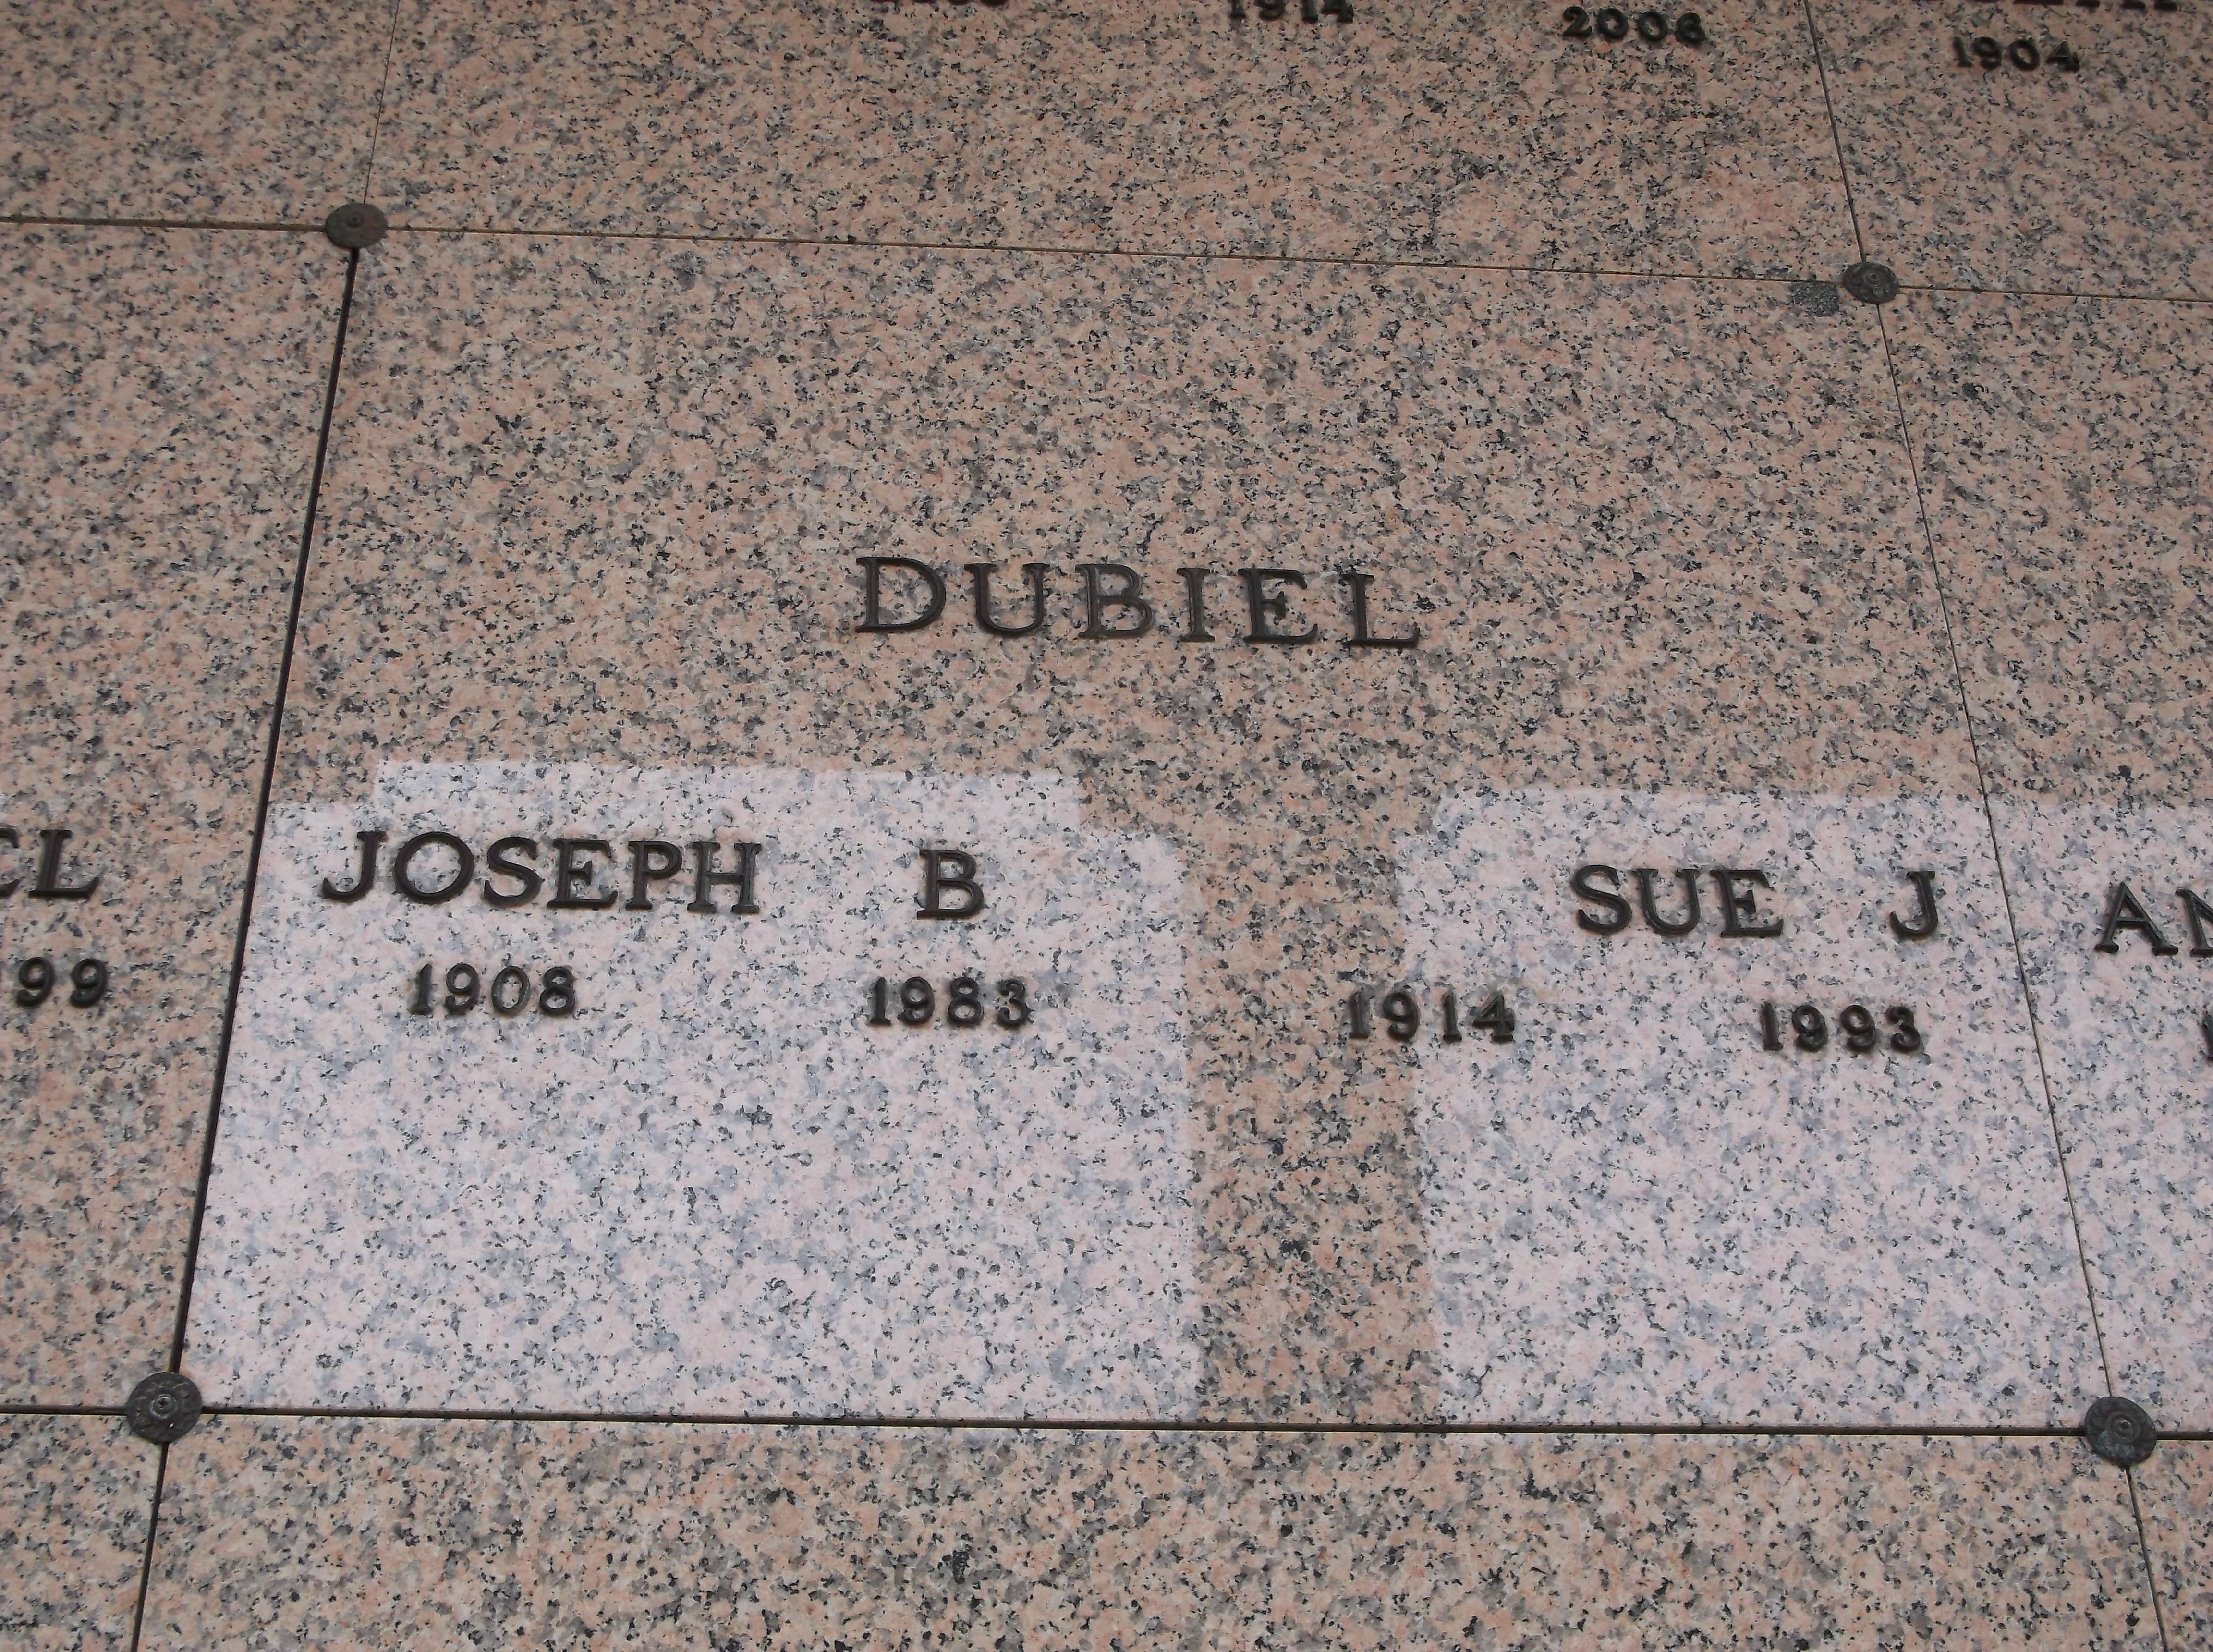 Joseph B Dubiel